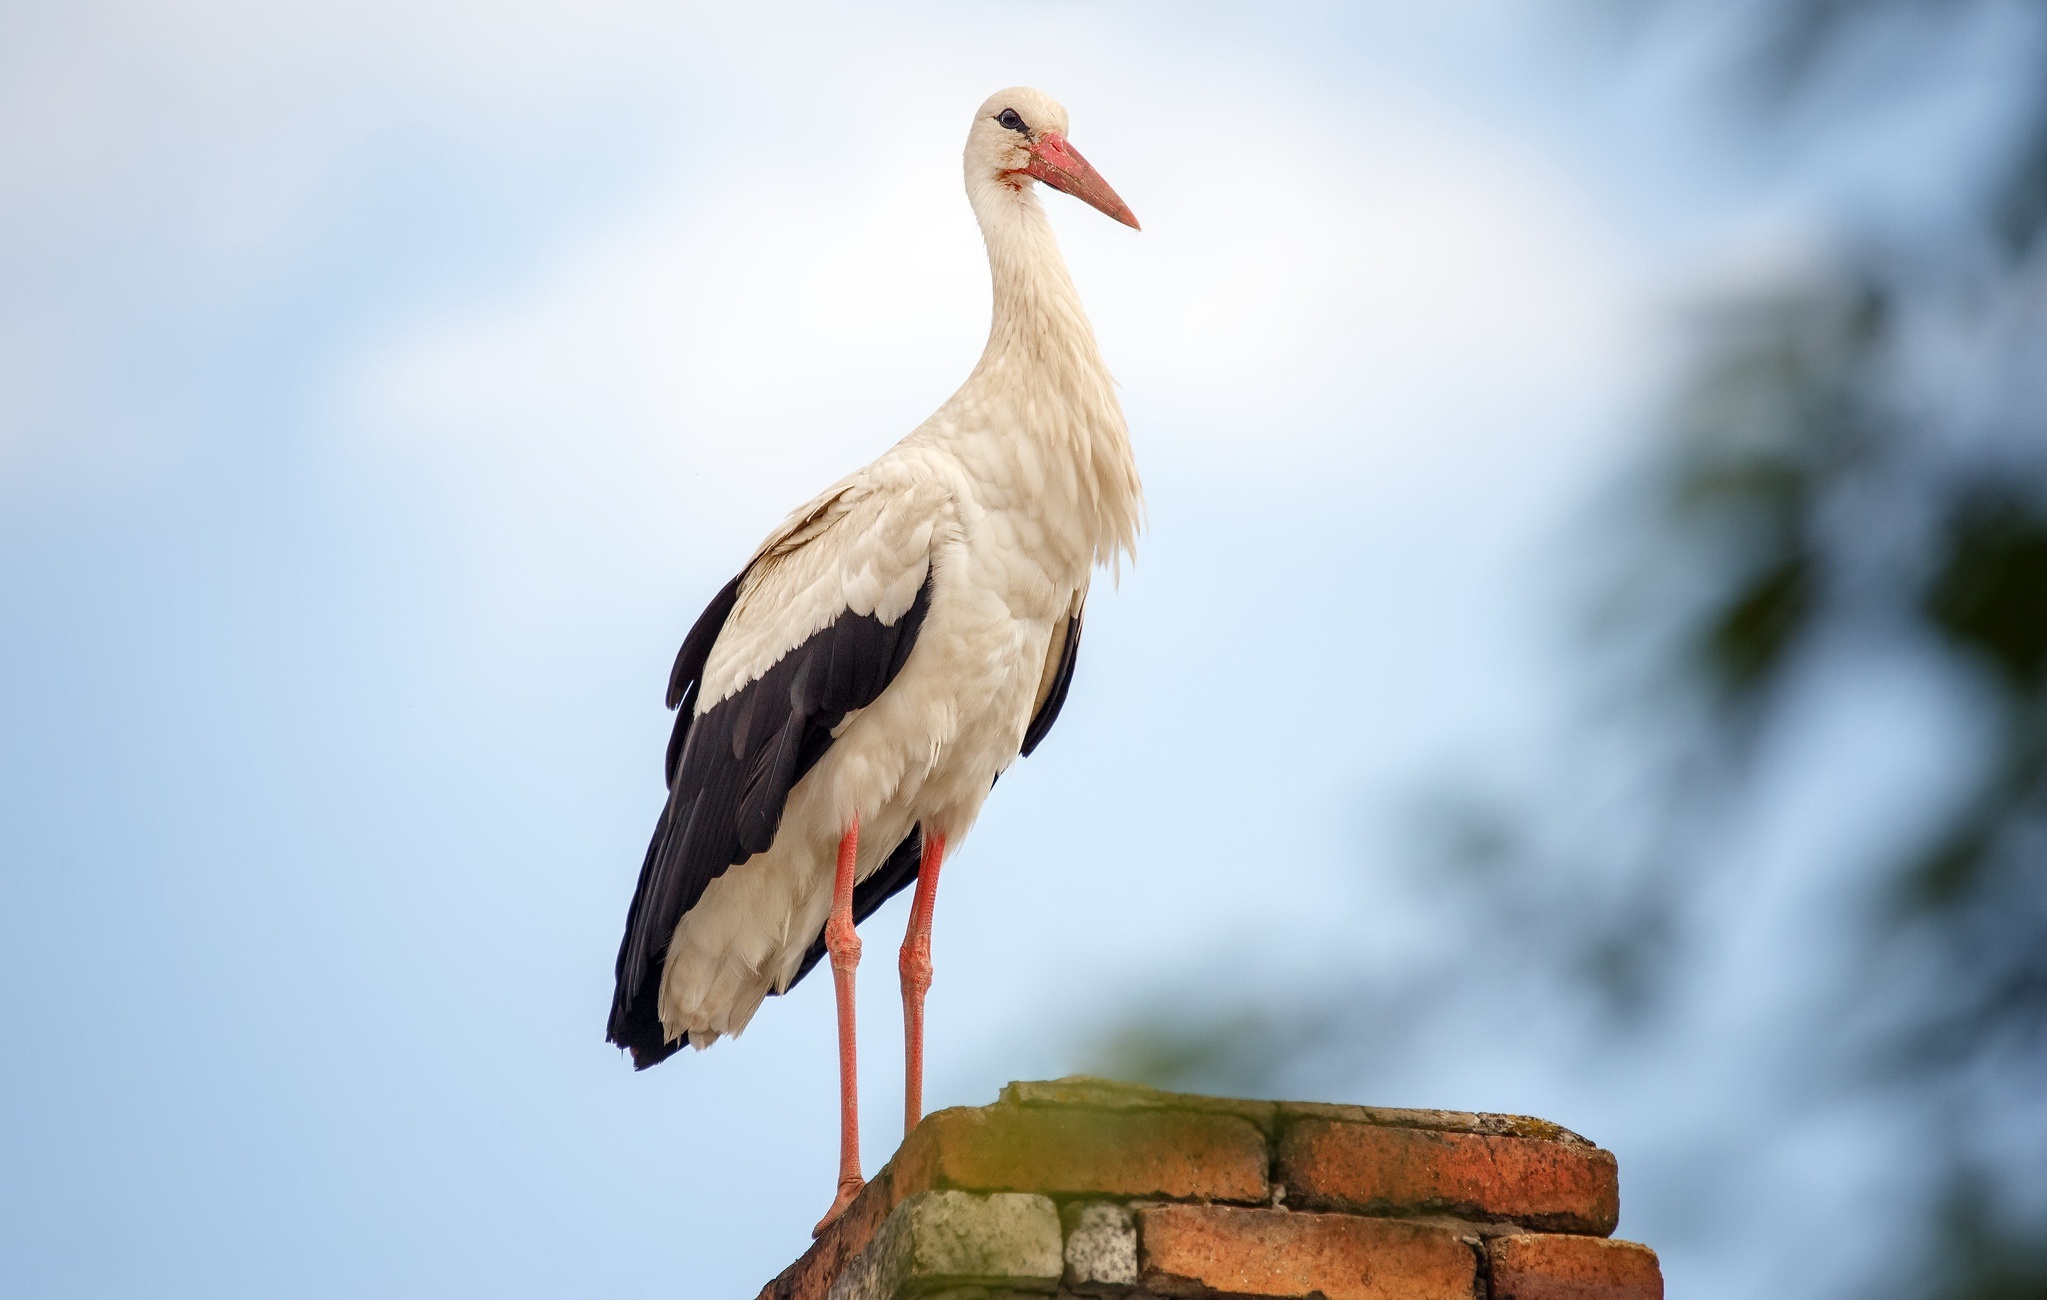 White stork wallpaper, Elegant bird, Aesthetic background, Desktop image, 2050x1300 HD Desktop